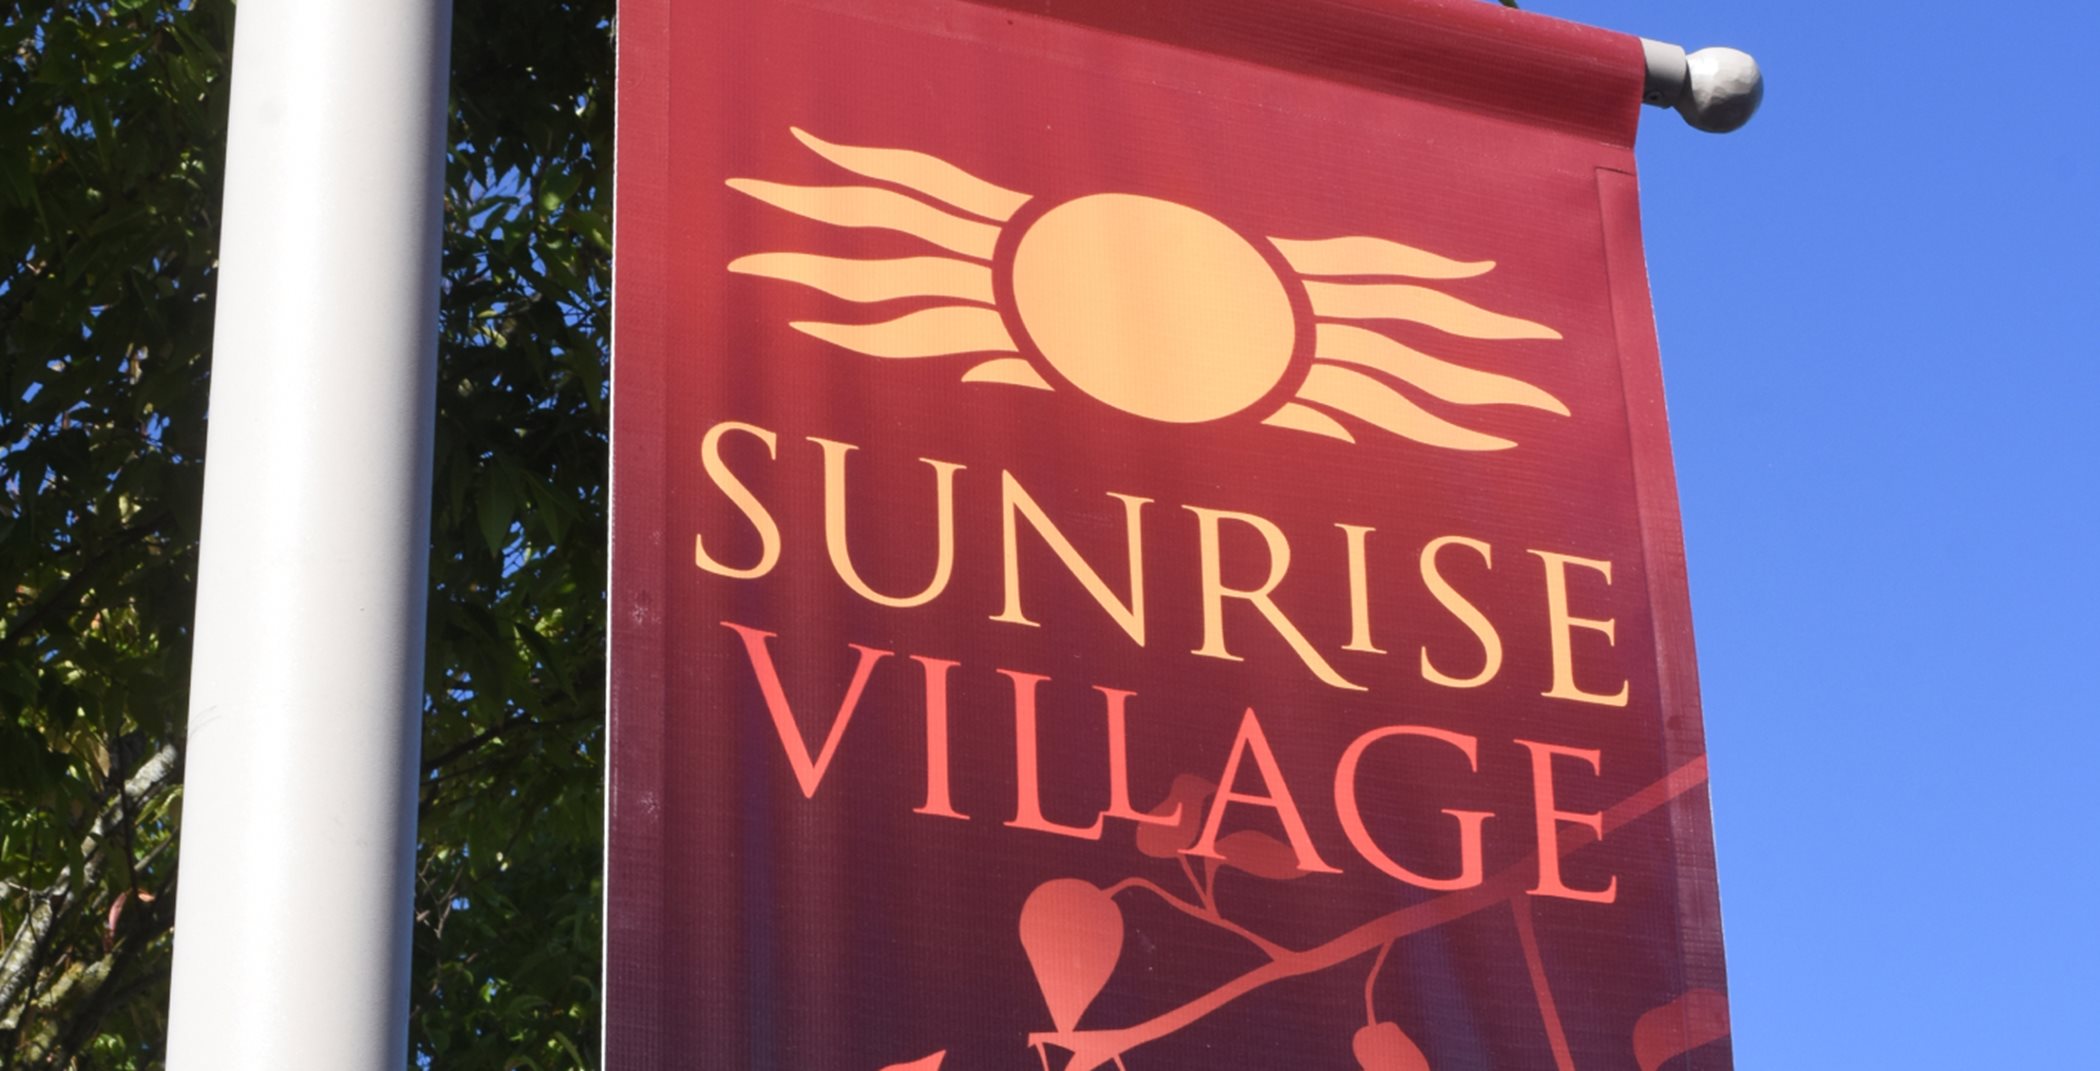 Sunrise Village flag